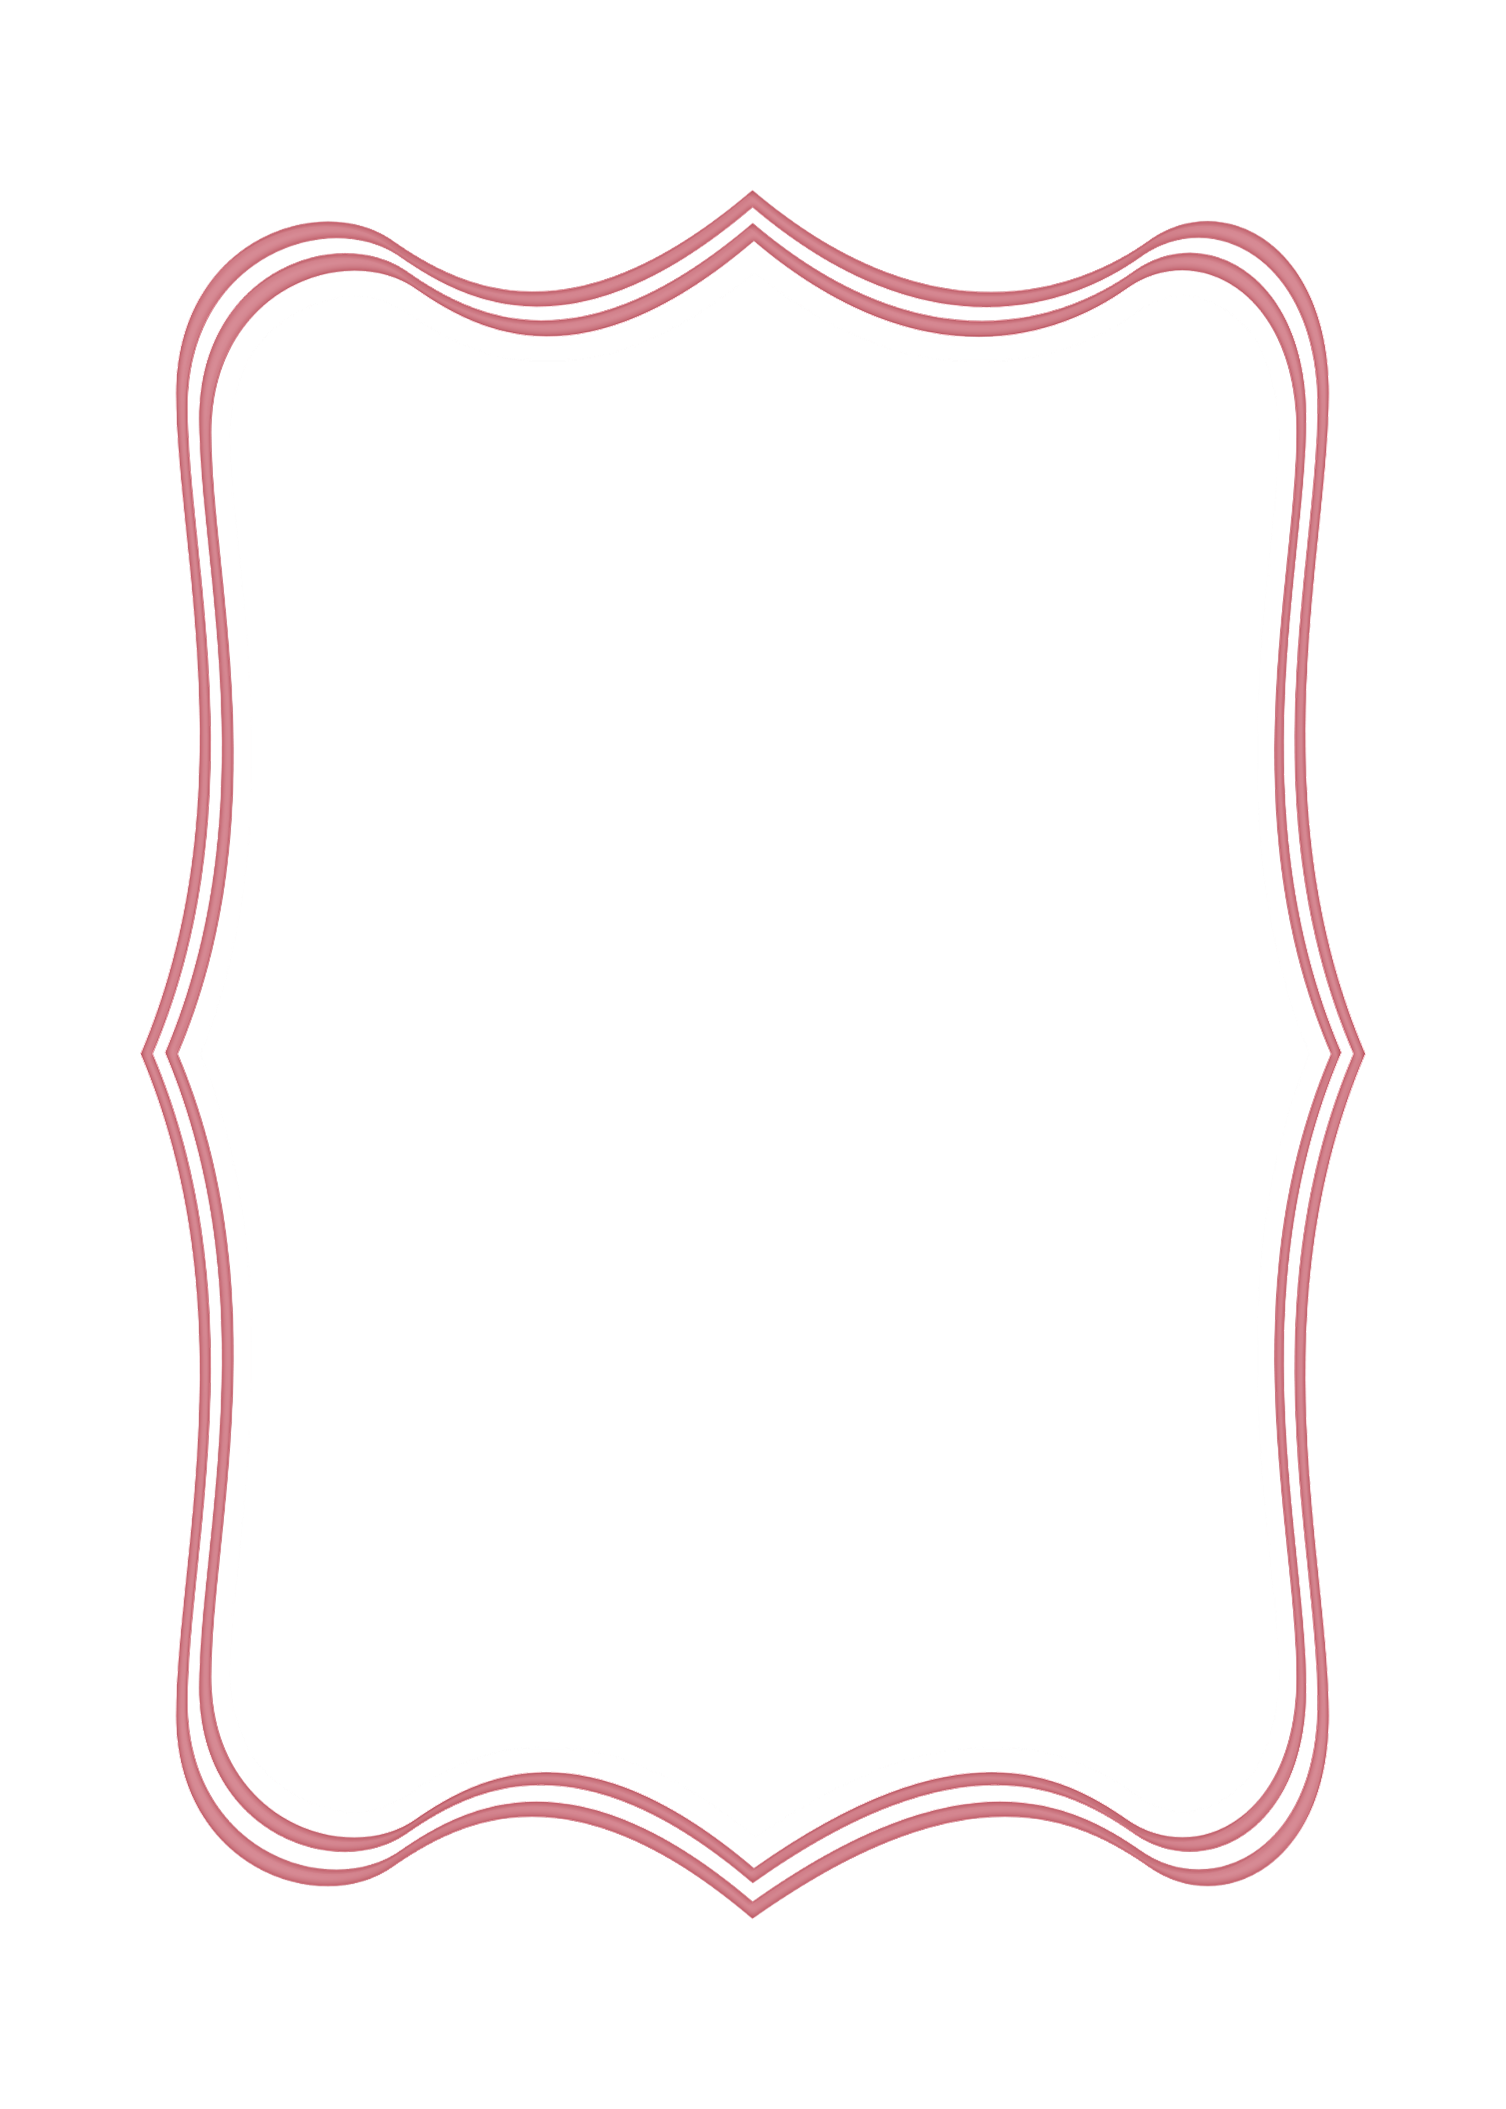 Pink bracket frame clipart outline 